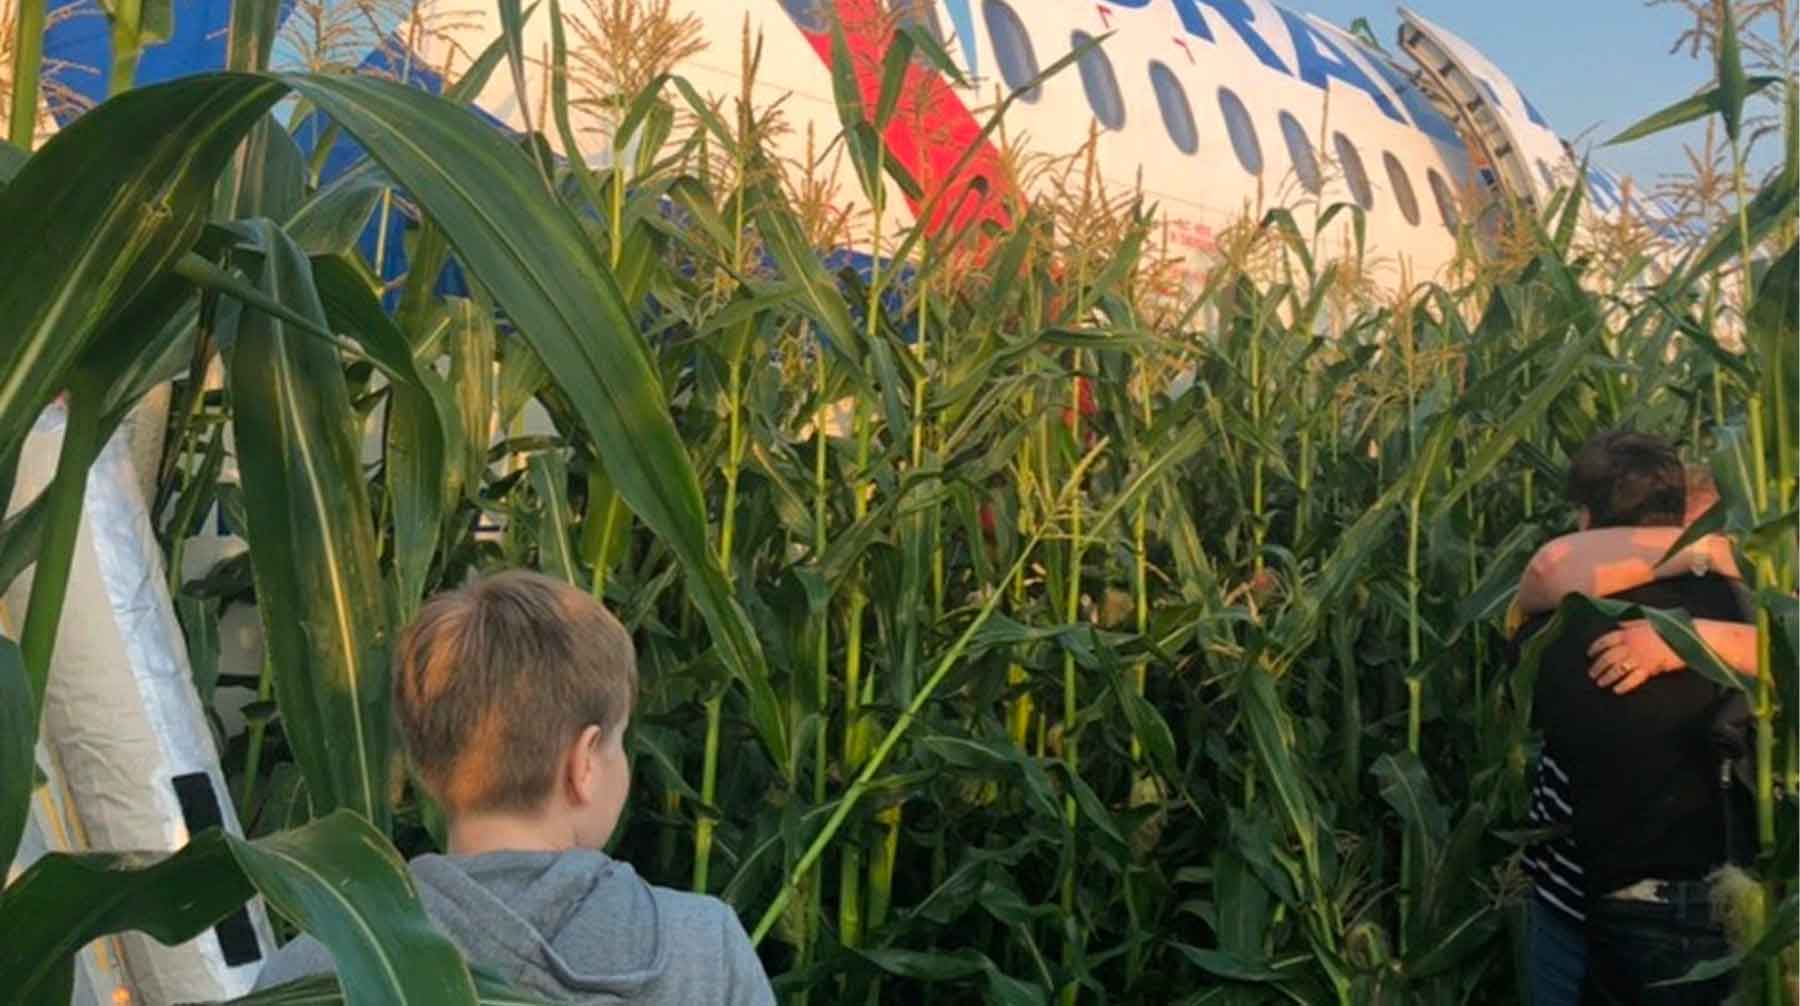 Дети сажают самолет. А321 Уральские авиалинии кукурузное поле. Уральские авиалинии кукурузное поле. Аэробус а321 в кукурузном поле. А321 Уральские авиалинии кукурузное поле блогер.